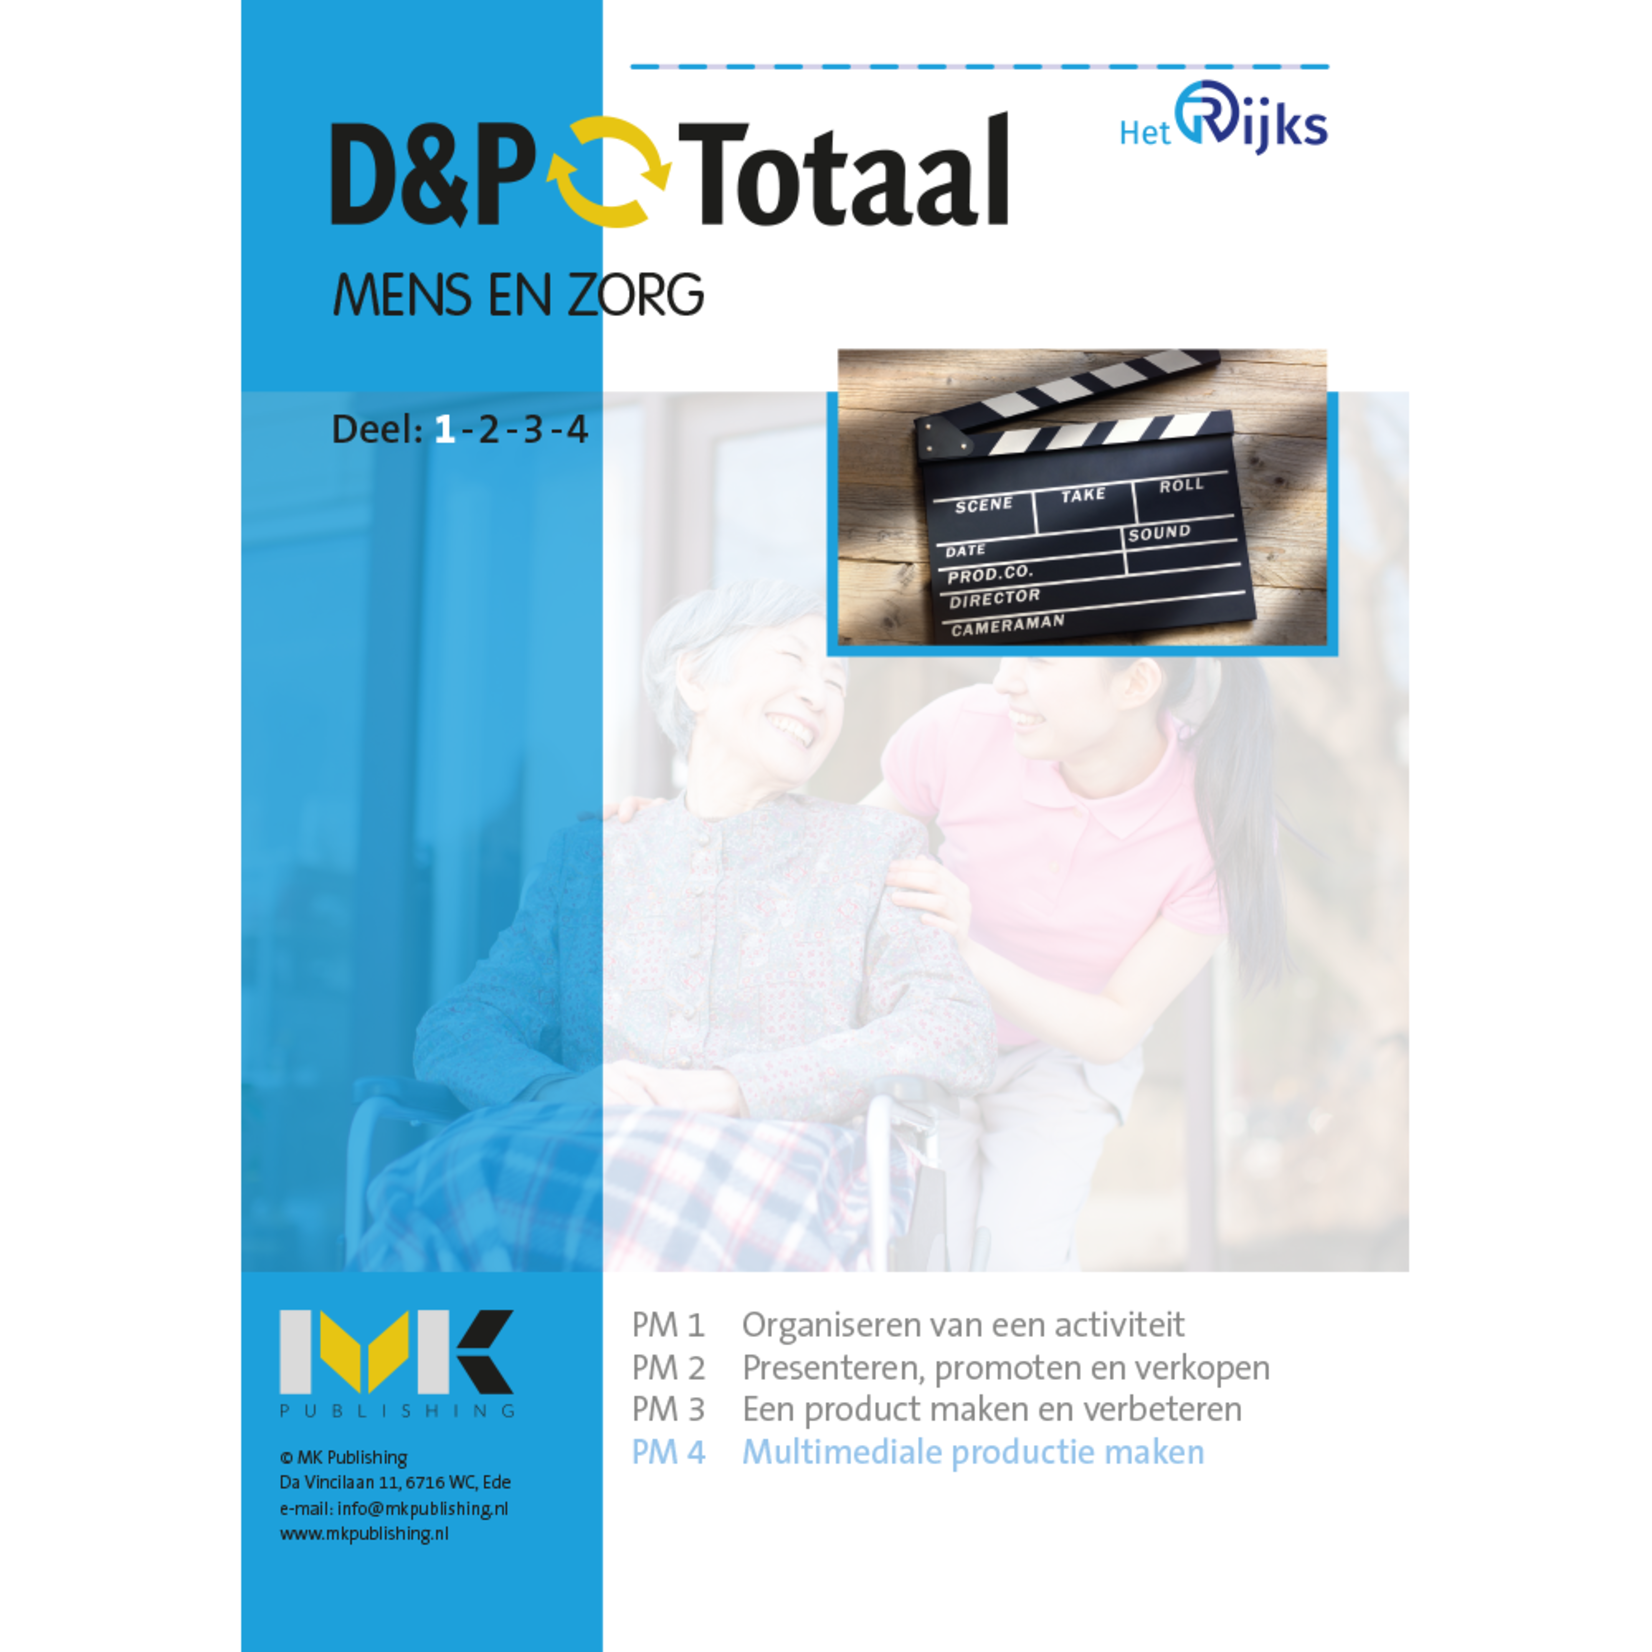 D&P-Totaal - Z&W Mens en Zorg Jongeren (PM4/1604)